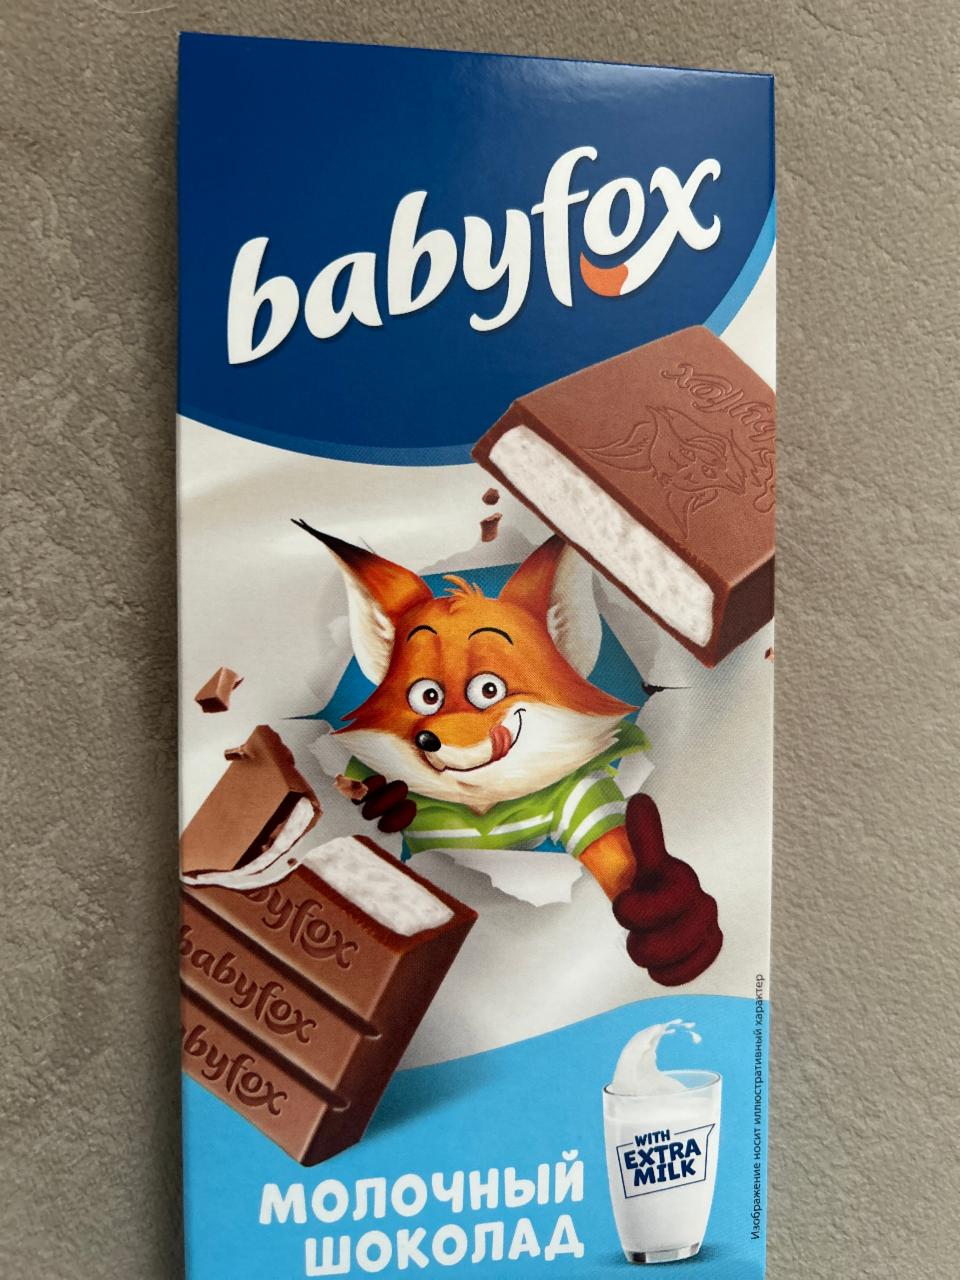 Фото - Молочный шоколад с молочной начинкой Babyfox